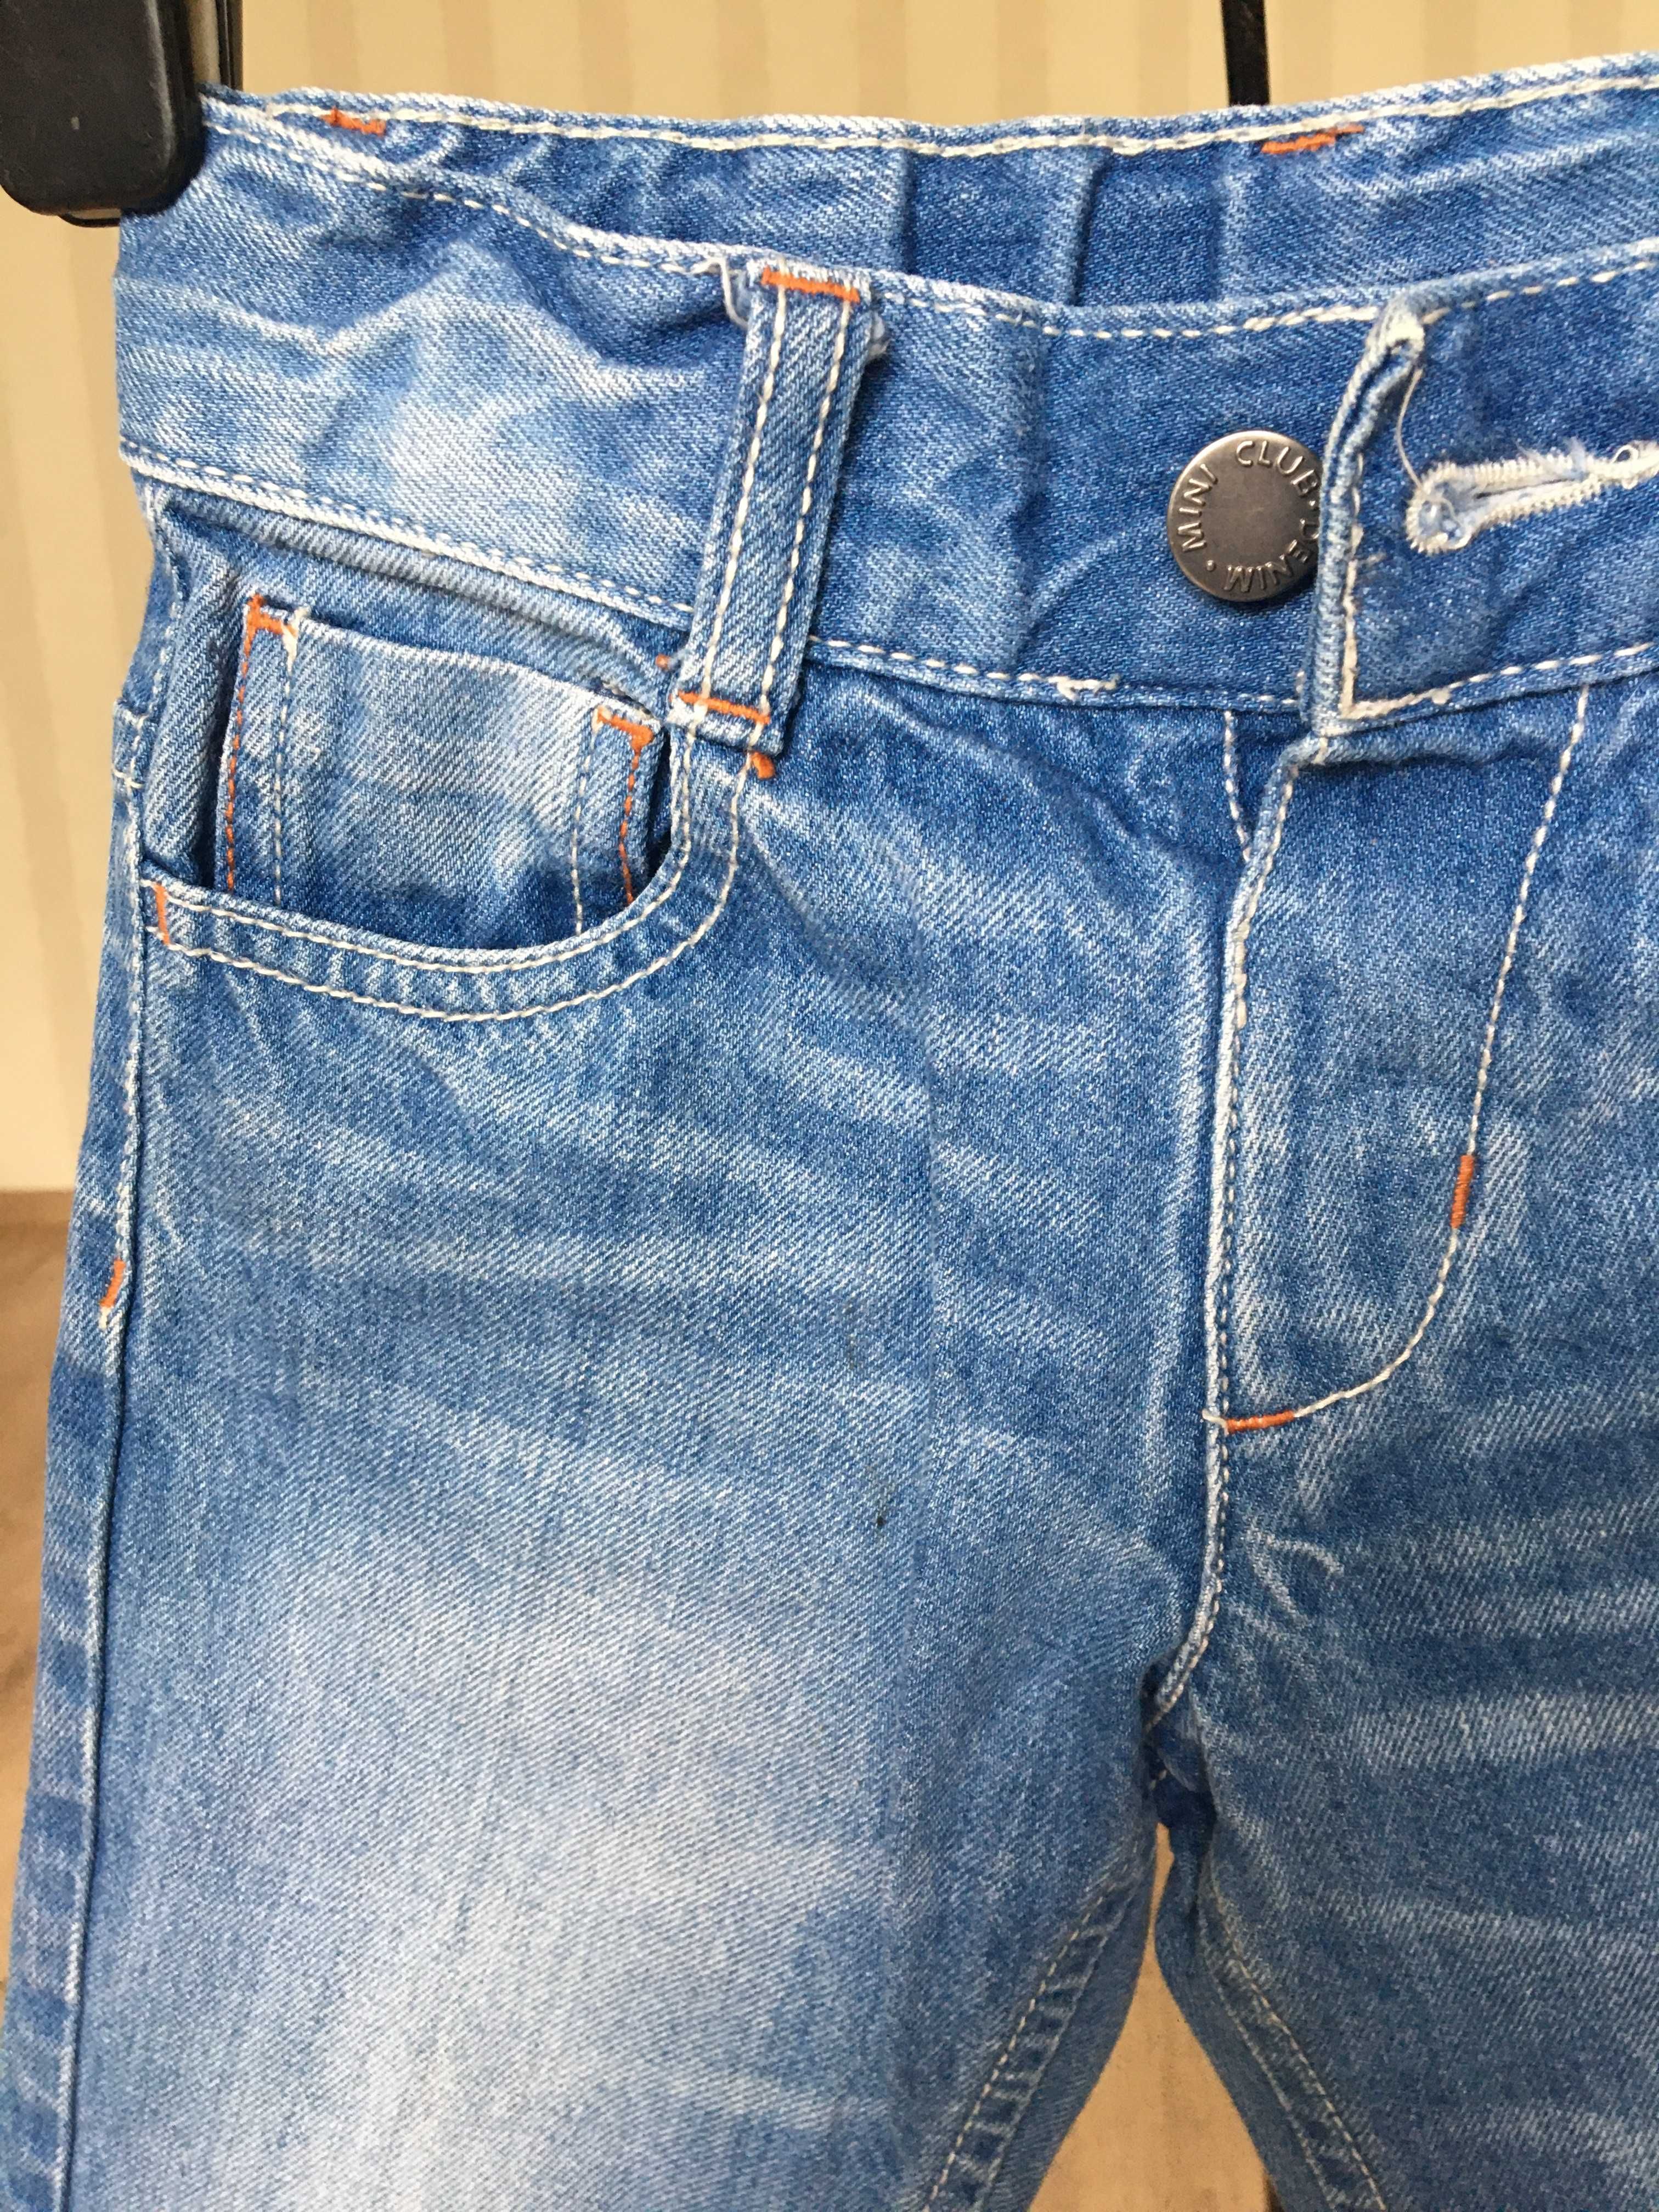 Новые джинсовые штанишки MINIclub  для мальчика 2,5 -3 года, 92-98 см.